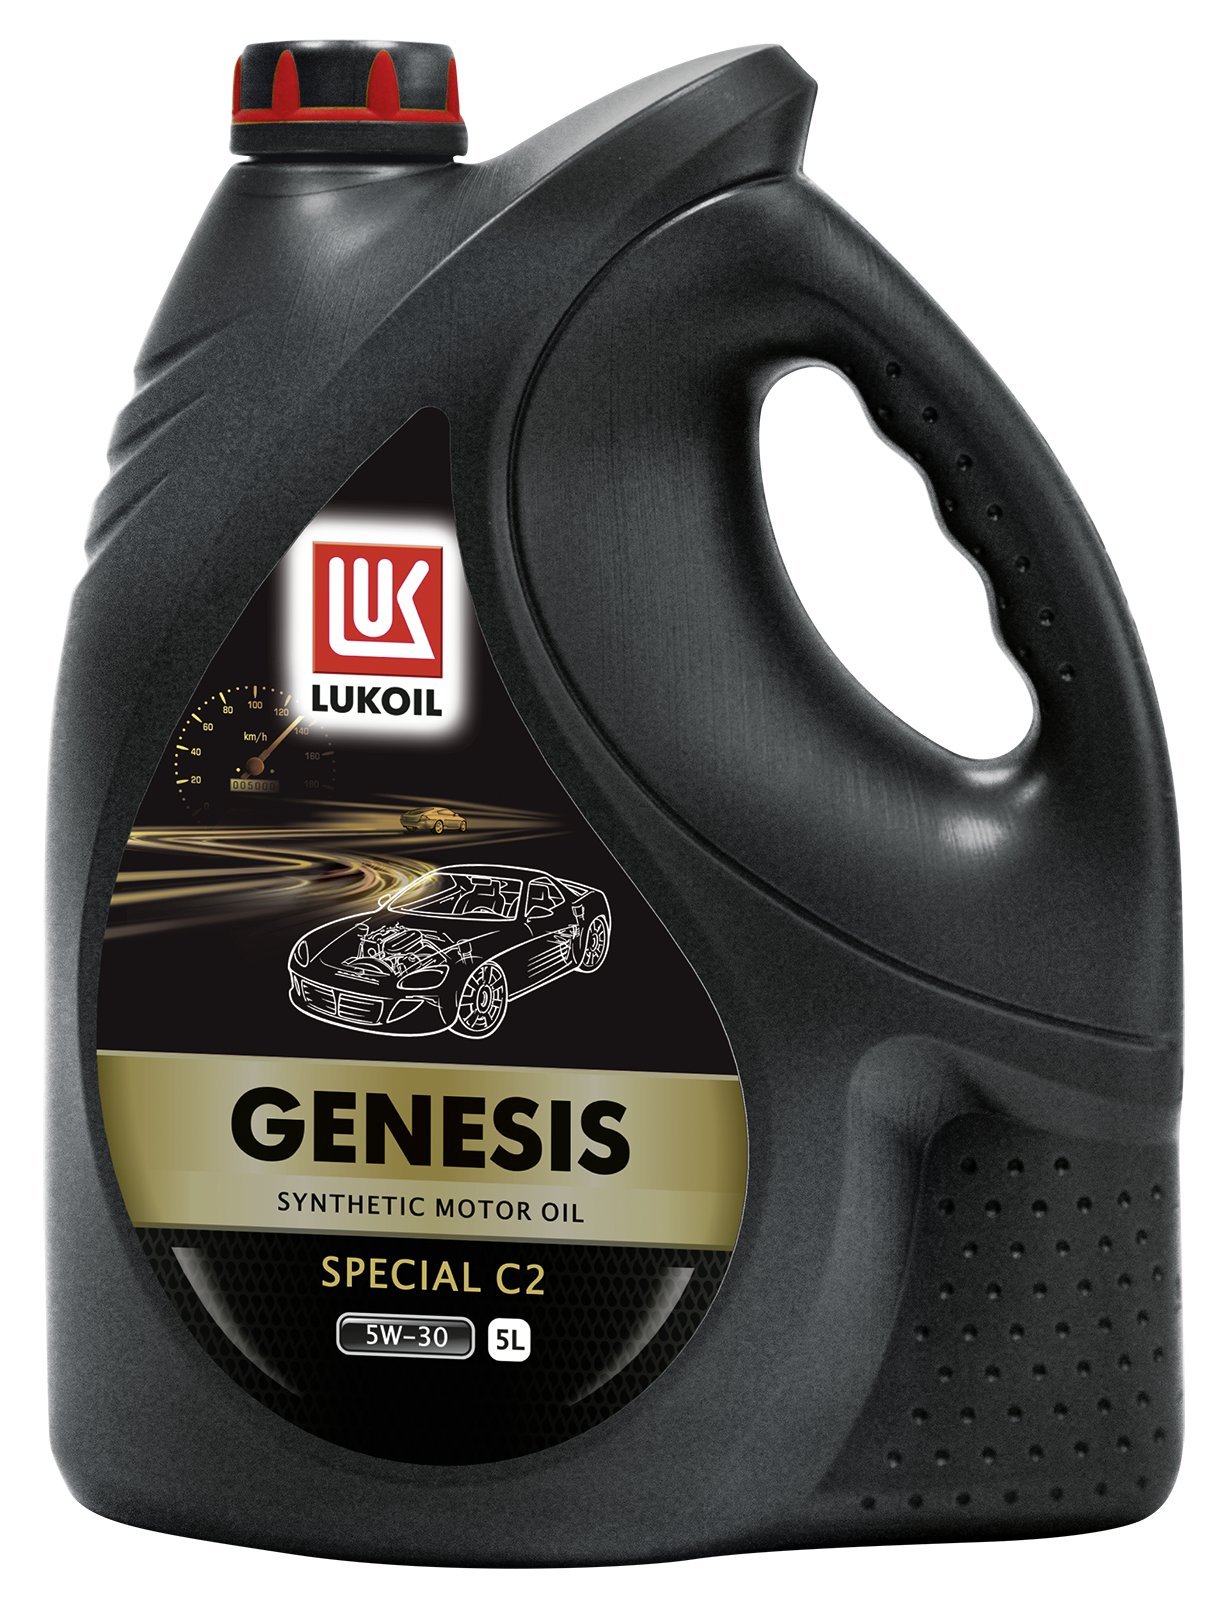 Lukoil Genesis Special C2 5W-30 (5 L) von Lukoil